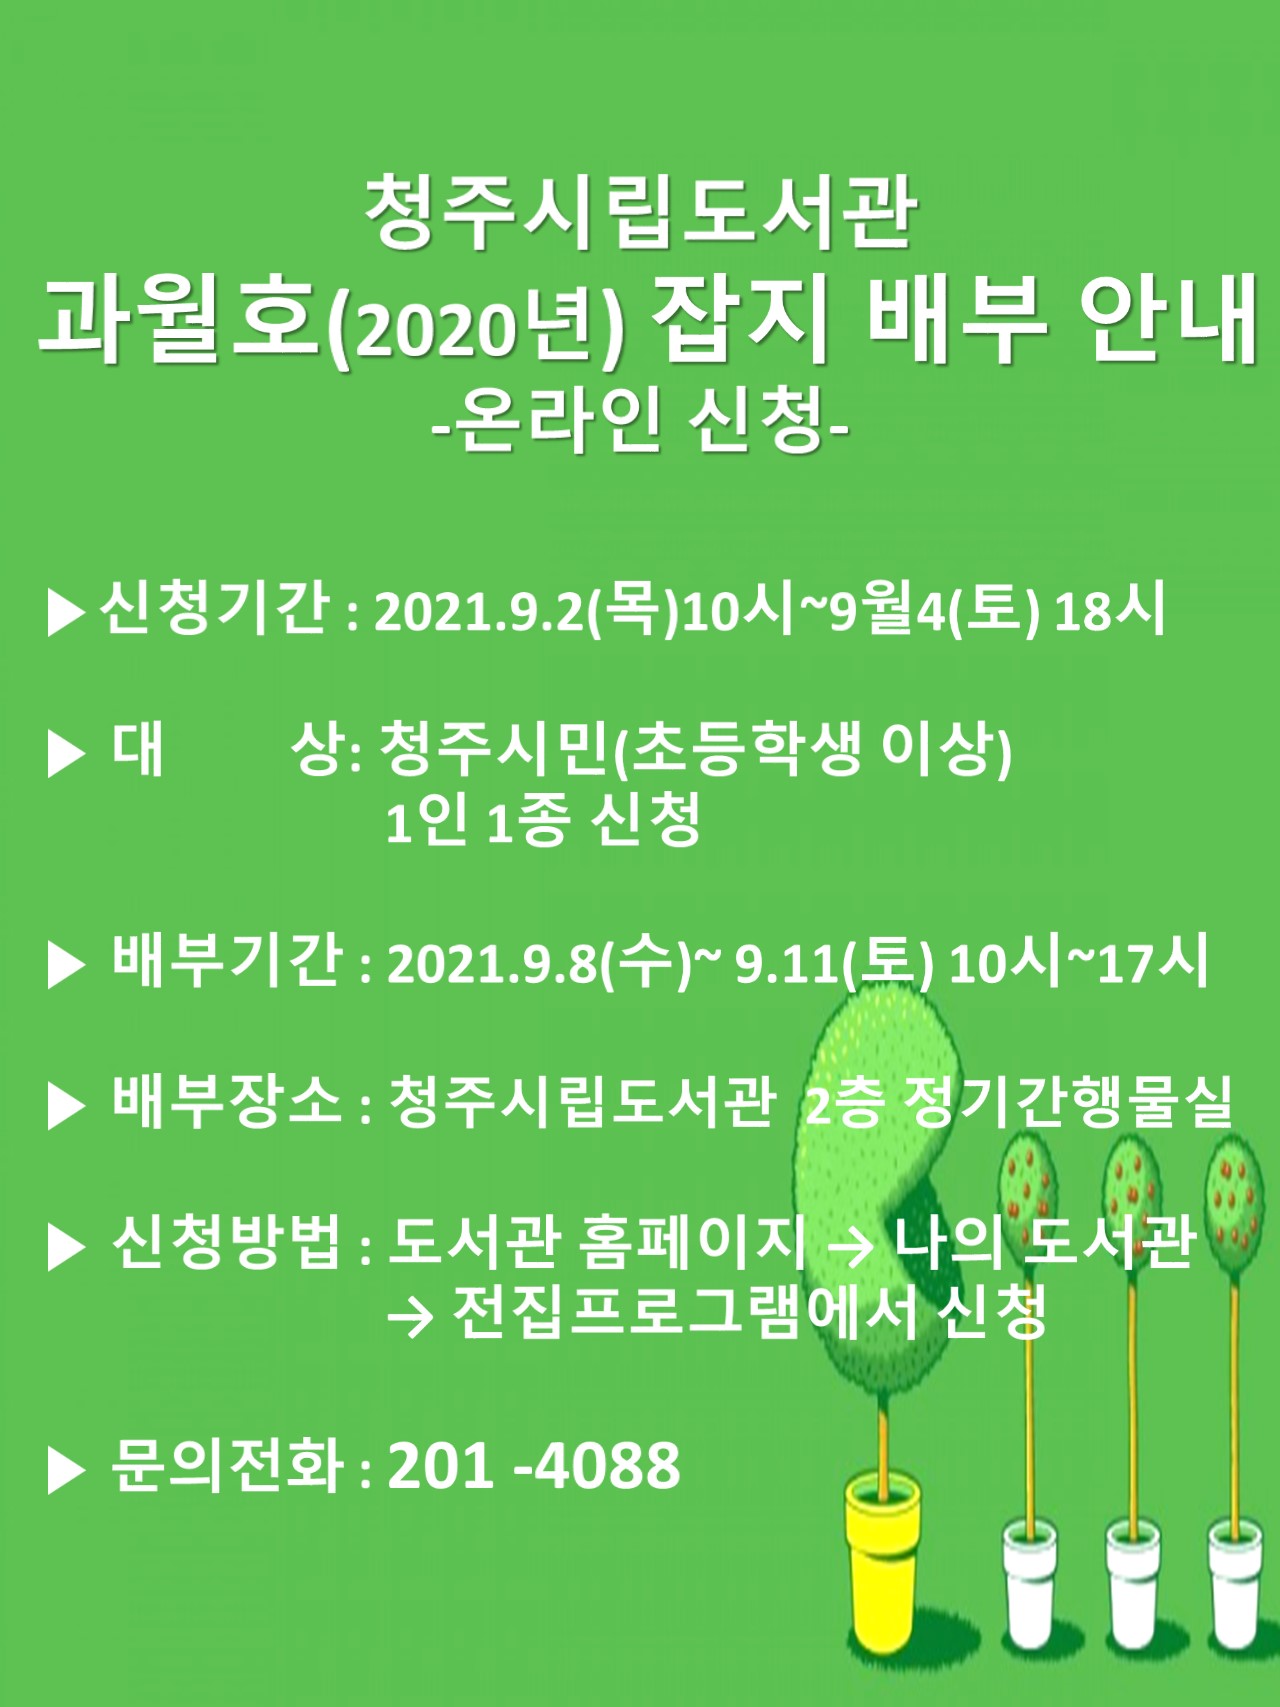 [시립도서관]2021년 독서의달 행사 안내 (원화전시회 일정변경)